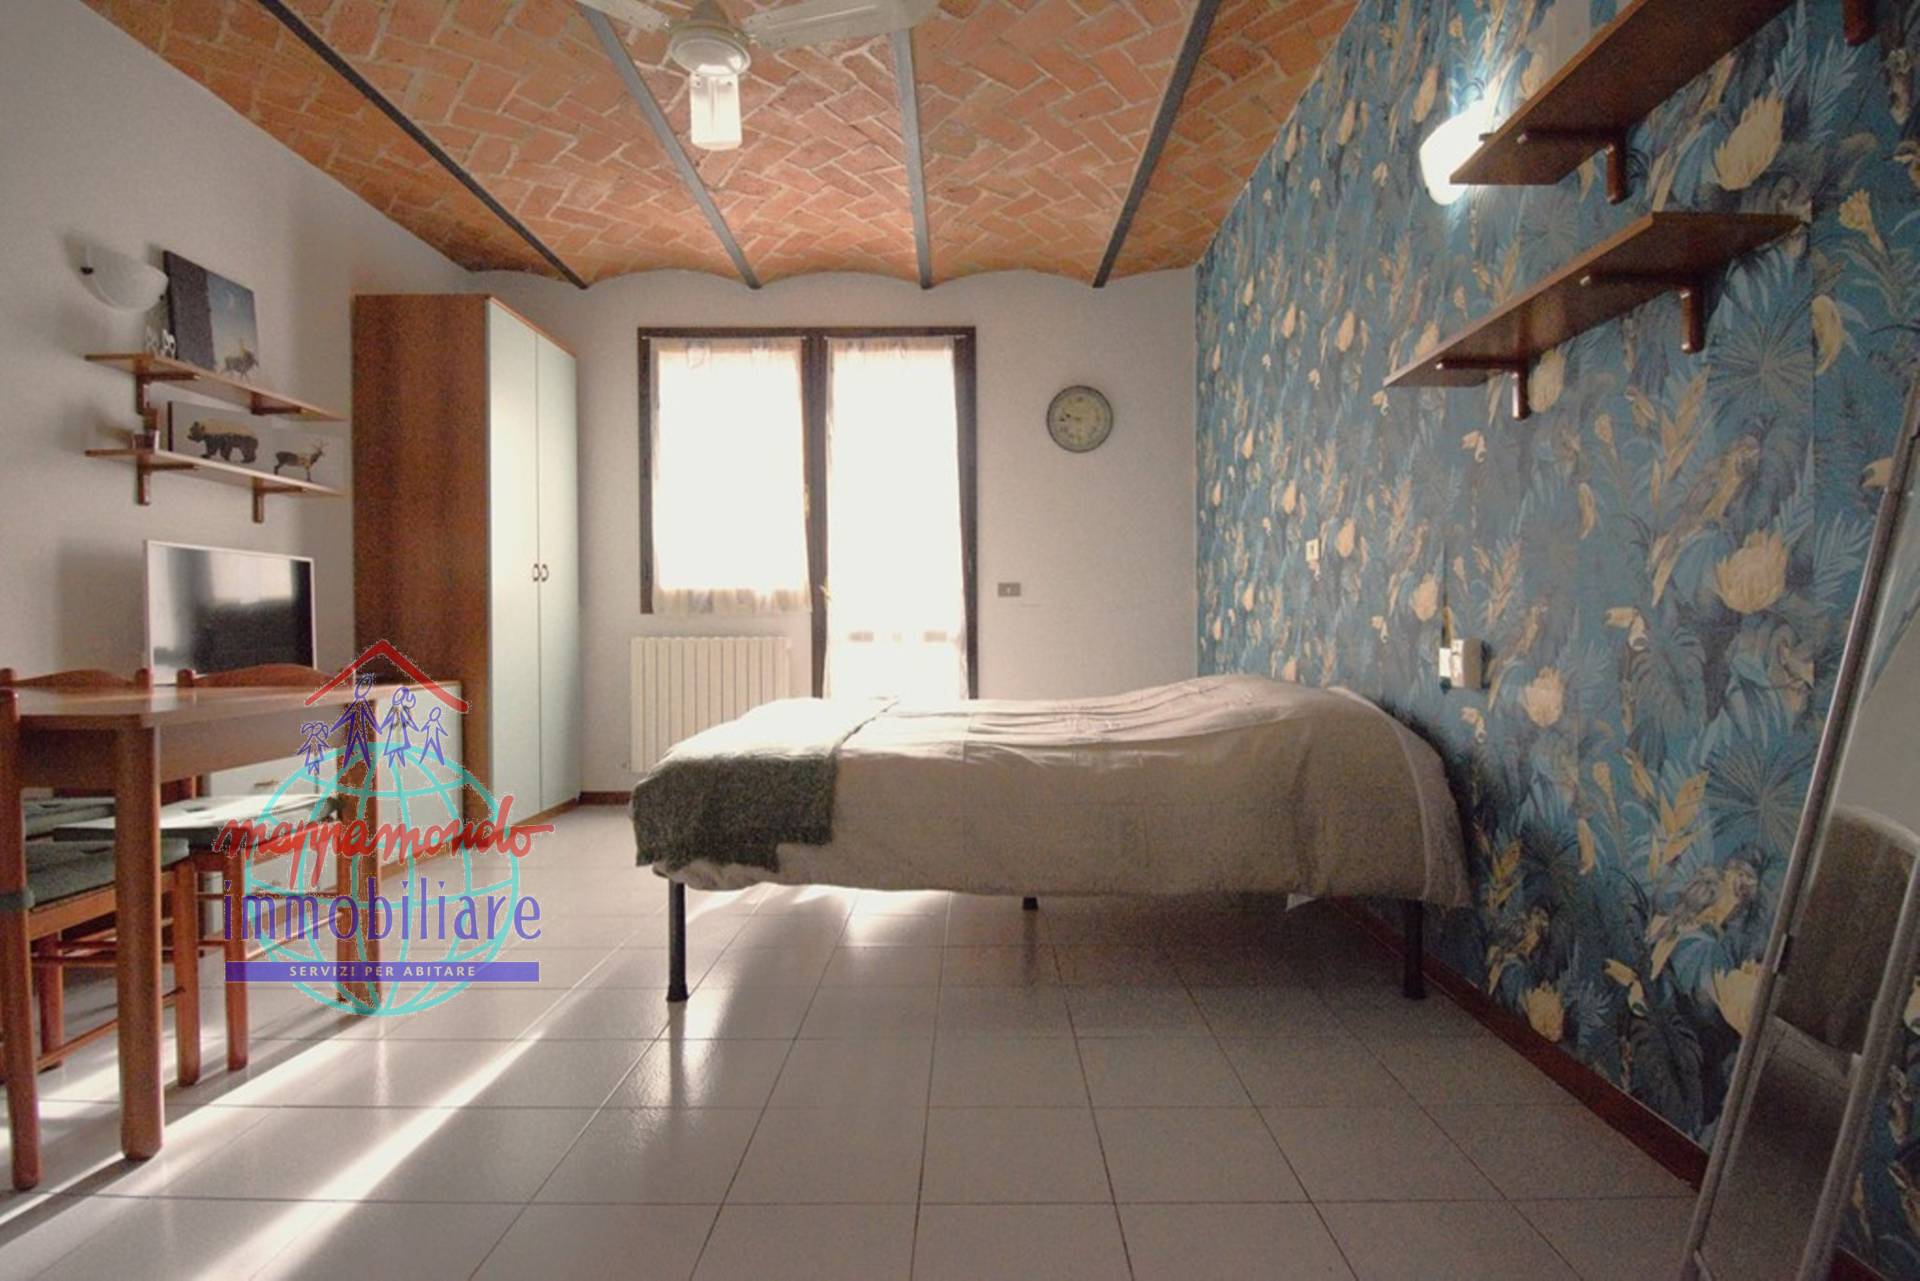 Appartamento in affitto a Cento, 1 locali, zona Località: Cento, prezzo € 580 | PortaleAgenzieImmobiliari.it